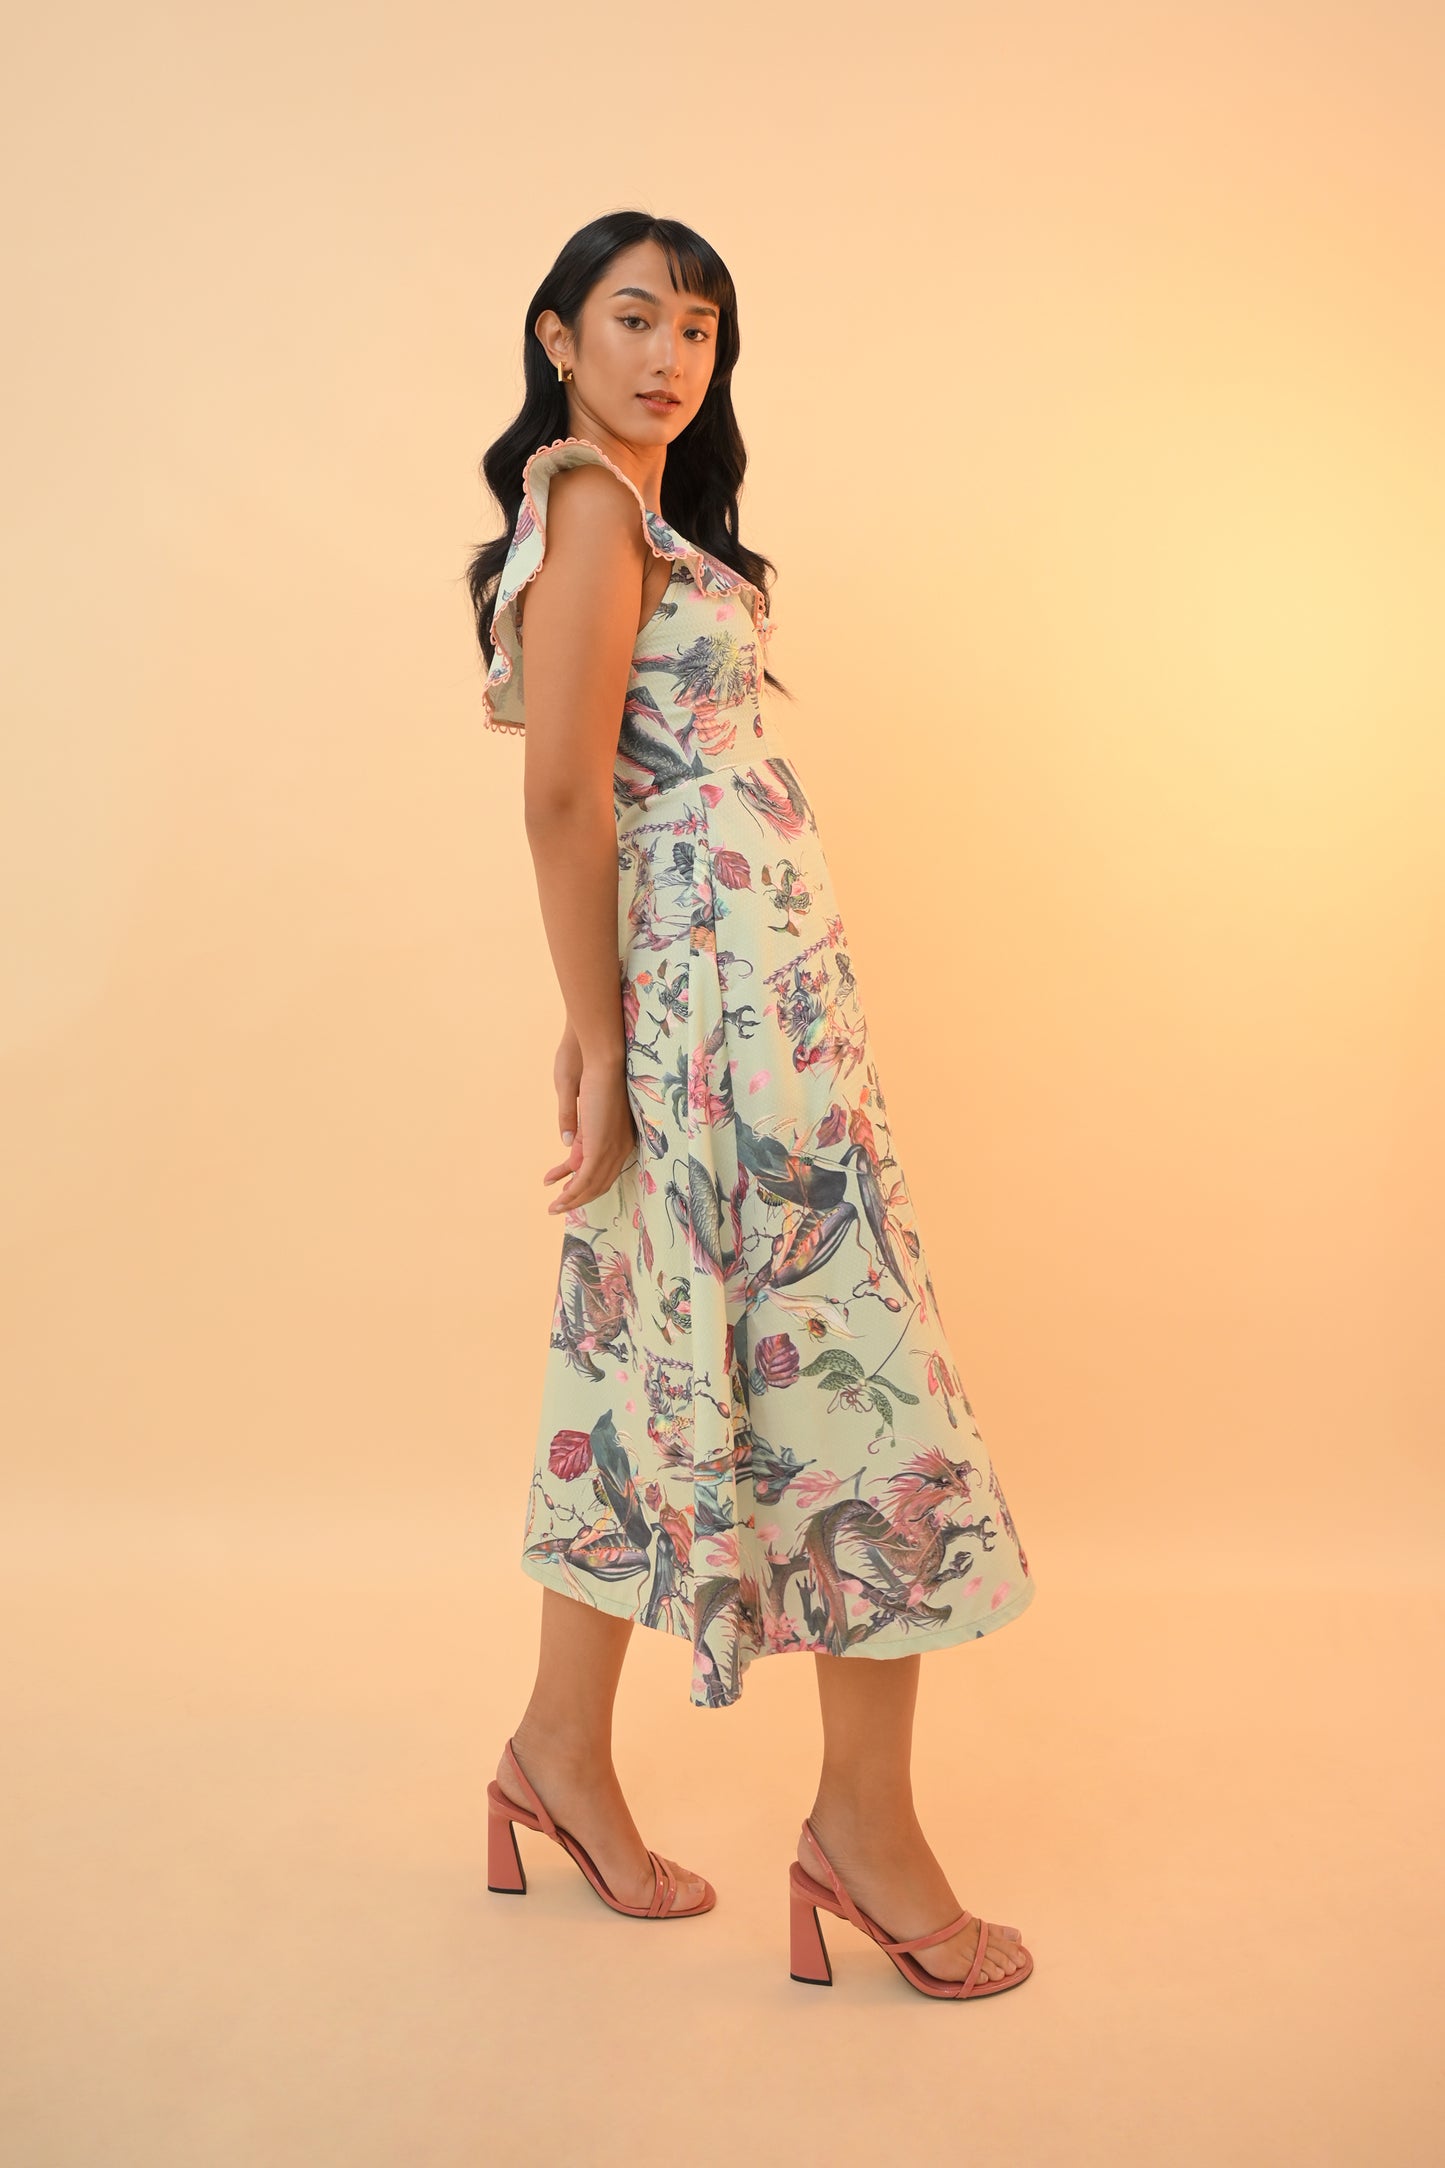 Dragon Sleeveless Dress - Summer Dresses (Multi)